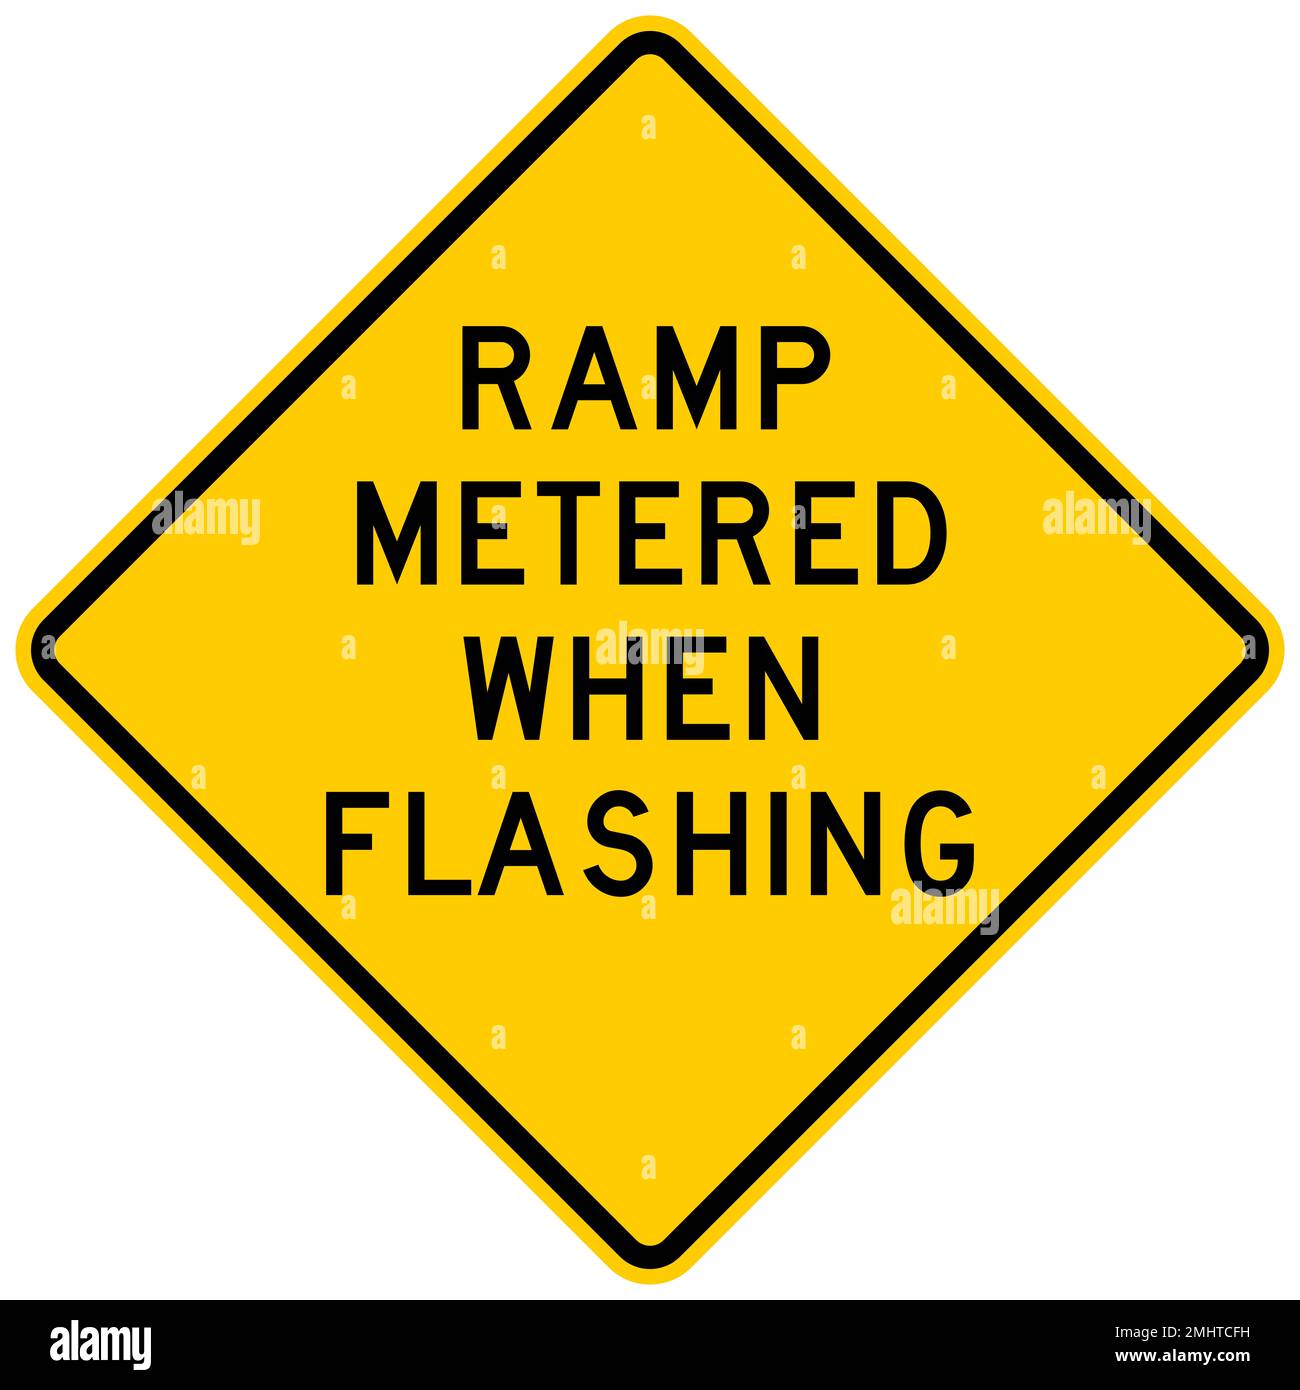 Ramp metered when flashing warning sign Stock Photo